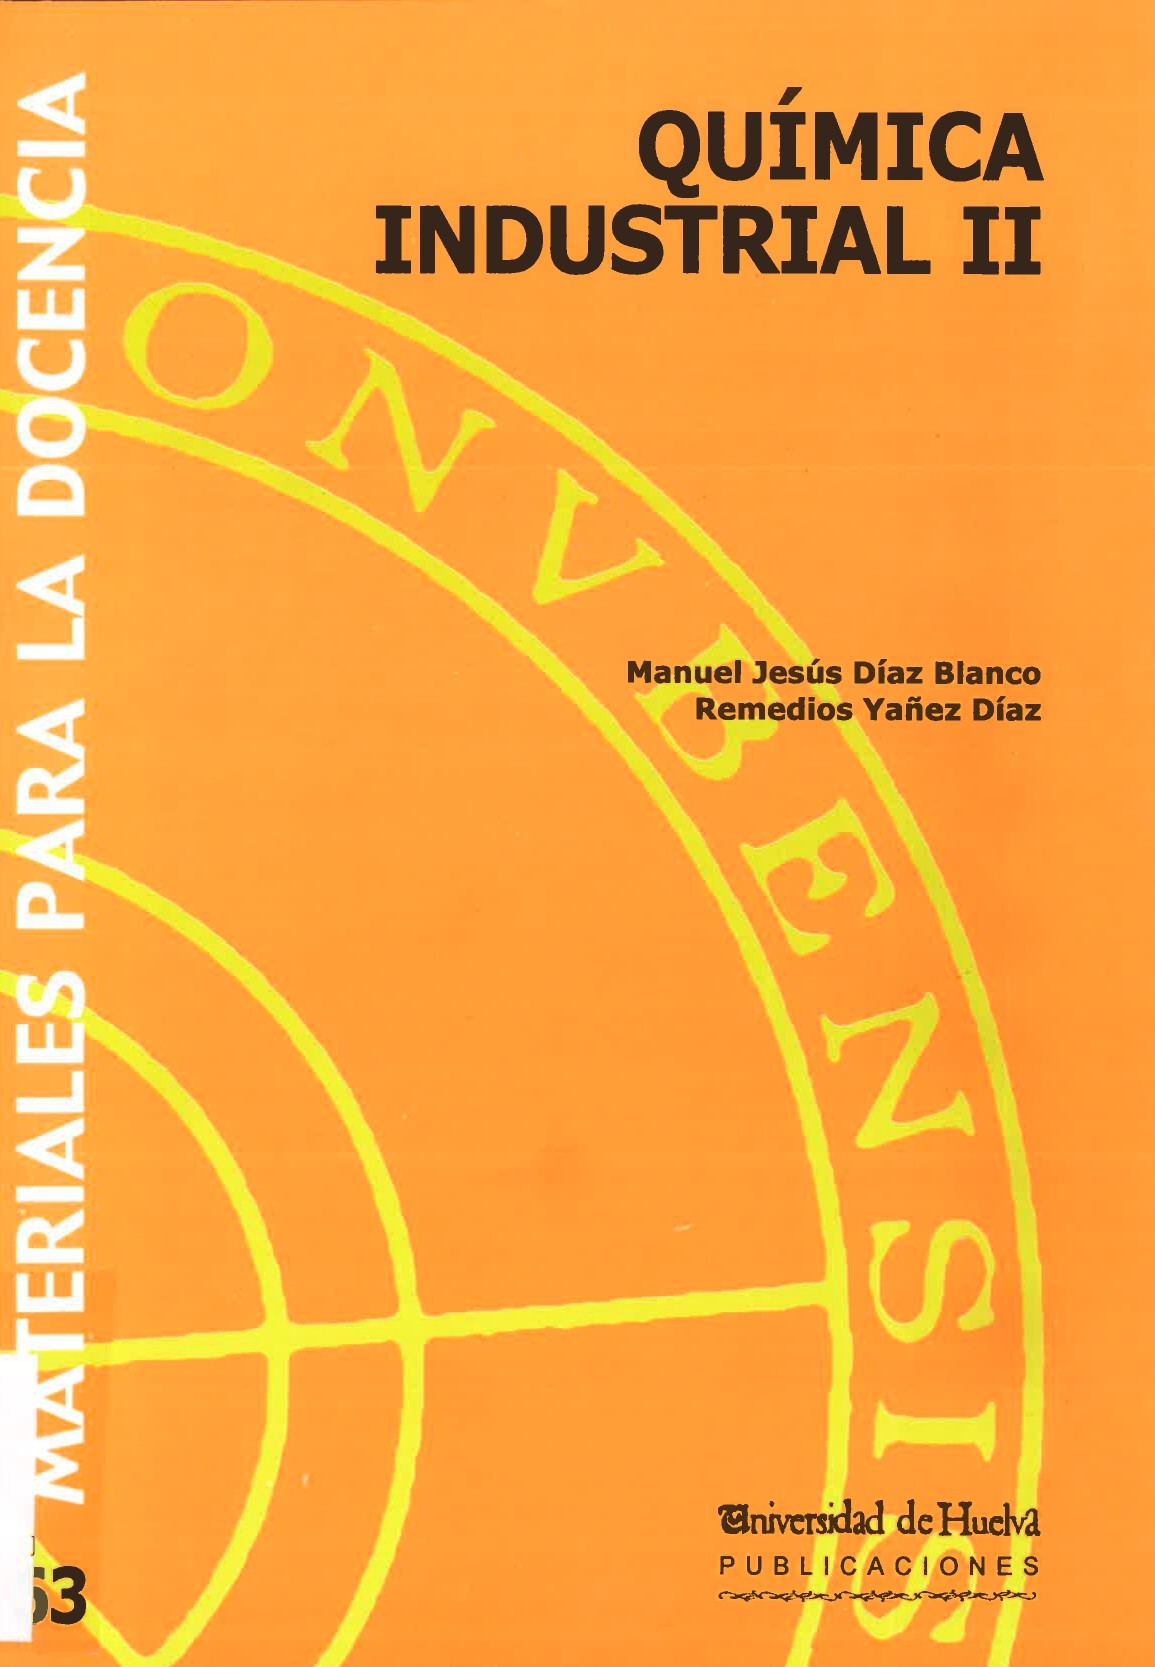 Imagen de portada del libro Química Industrial II